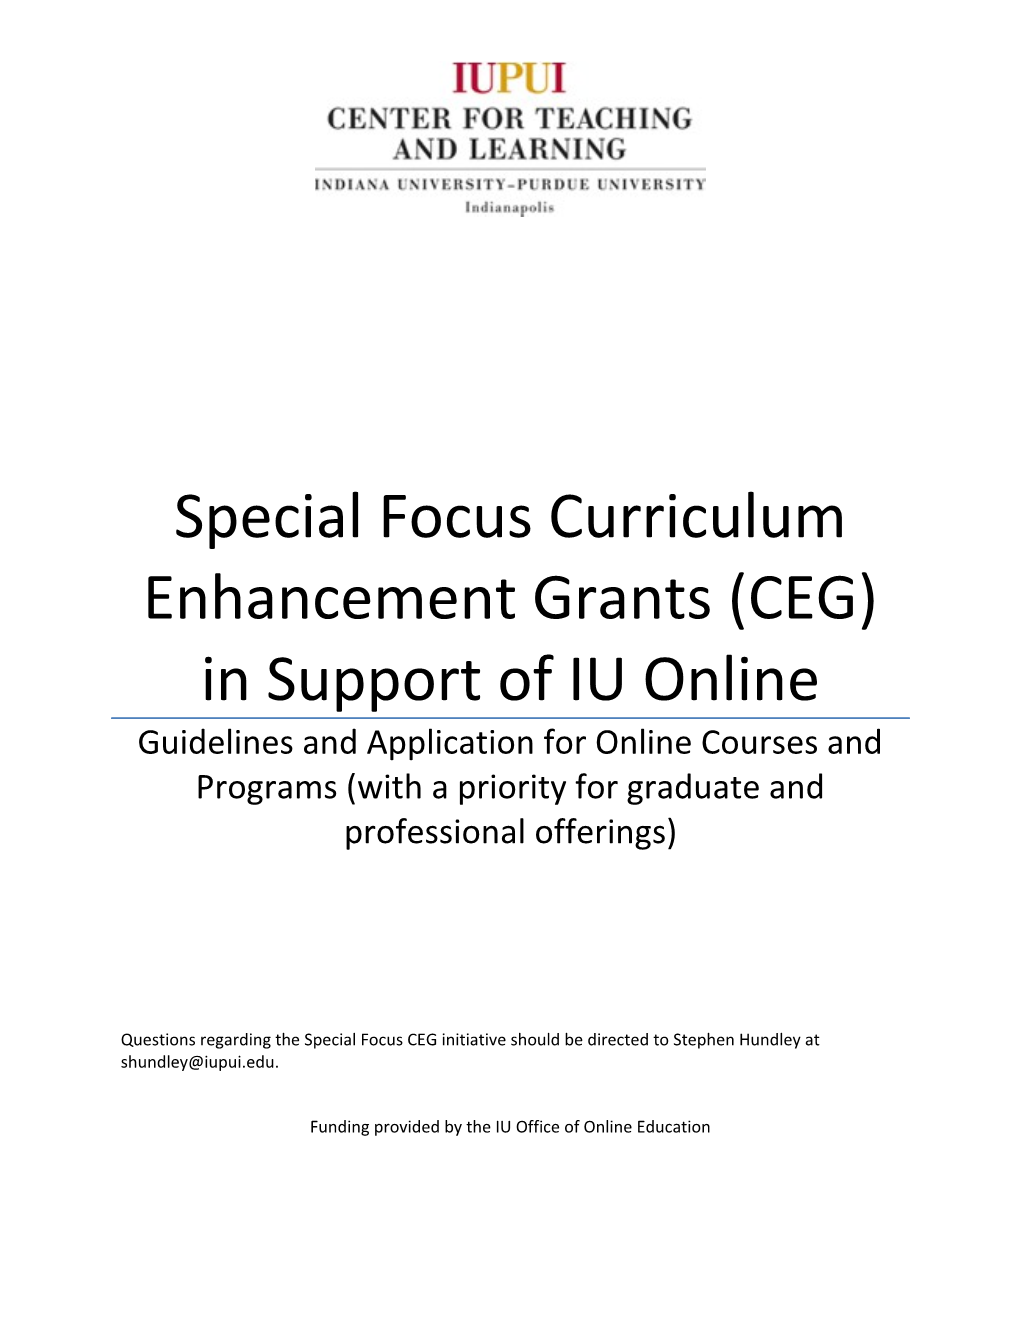 Special Focus Curriculum Enhancement Grants (CEG) in Support of IU Online